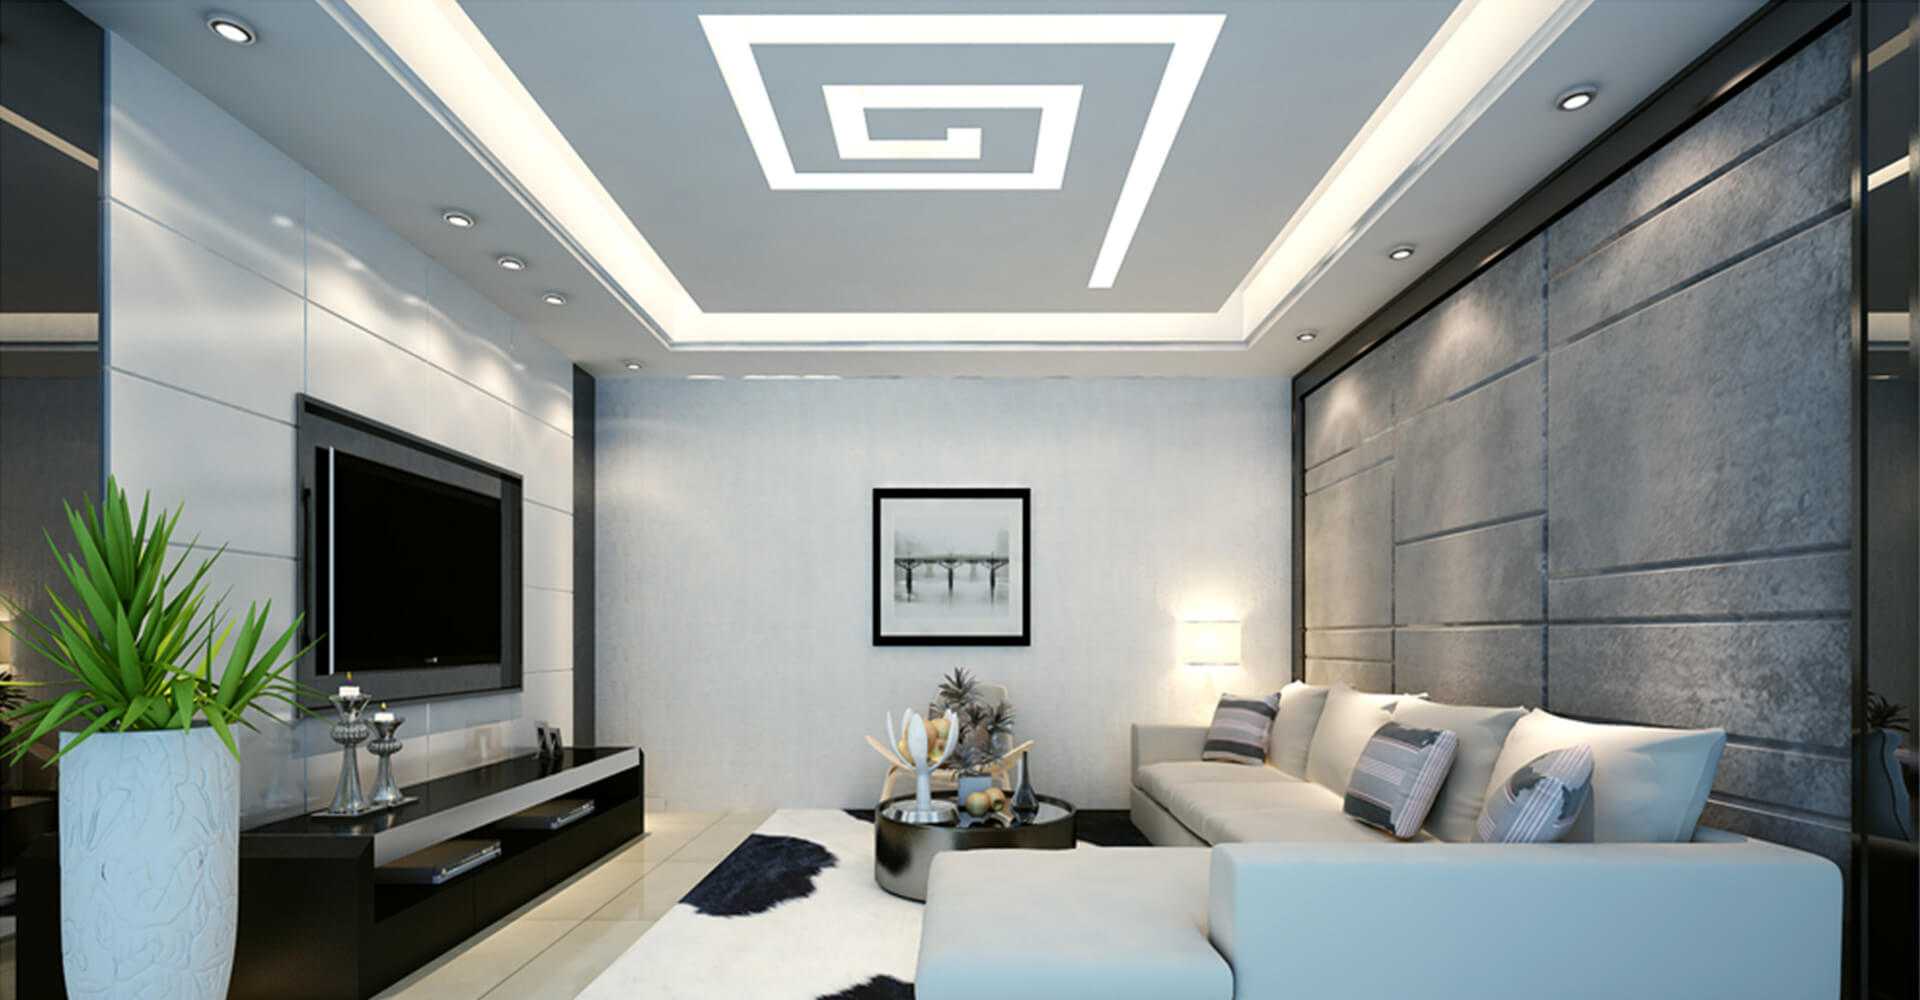 Đèn trang trí trần thạch cao phòng khách 2024
Với năm 2024, đèn trang trí trần thạch cao phòng khách đã được cải tiến với nhiều mẫu mã đa dạng, hiện đại hơn và tính năng thông minh hơn. Những thiết kế mới này mang đến không gian sống thêm sang trọng, ấm cúng và hiện đại hơn bao giờ hết. Đèn trang trí này cũng giúp cho phòng khách của bạn trở nên rực rỡ hơn với ánh sáng tinh tế và đa dạng.